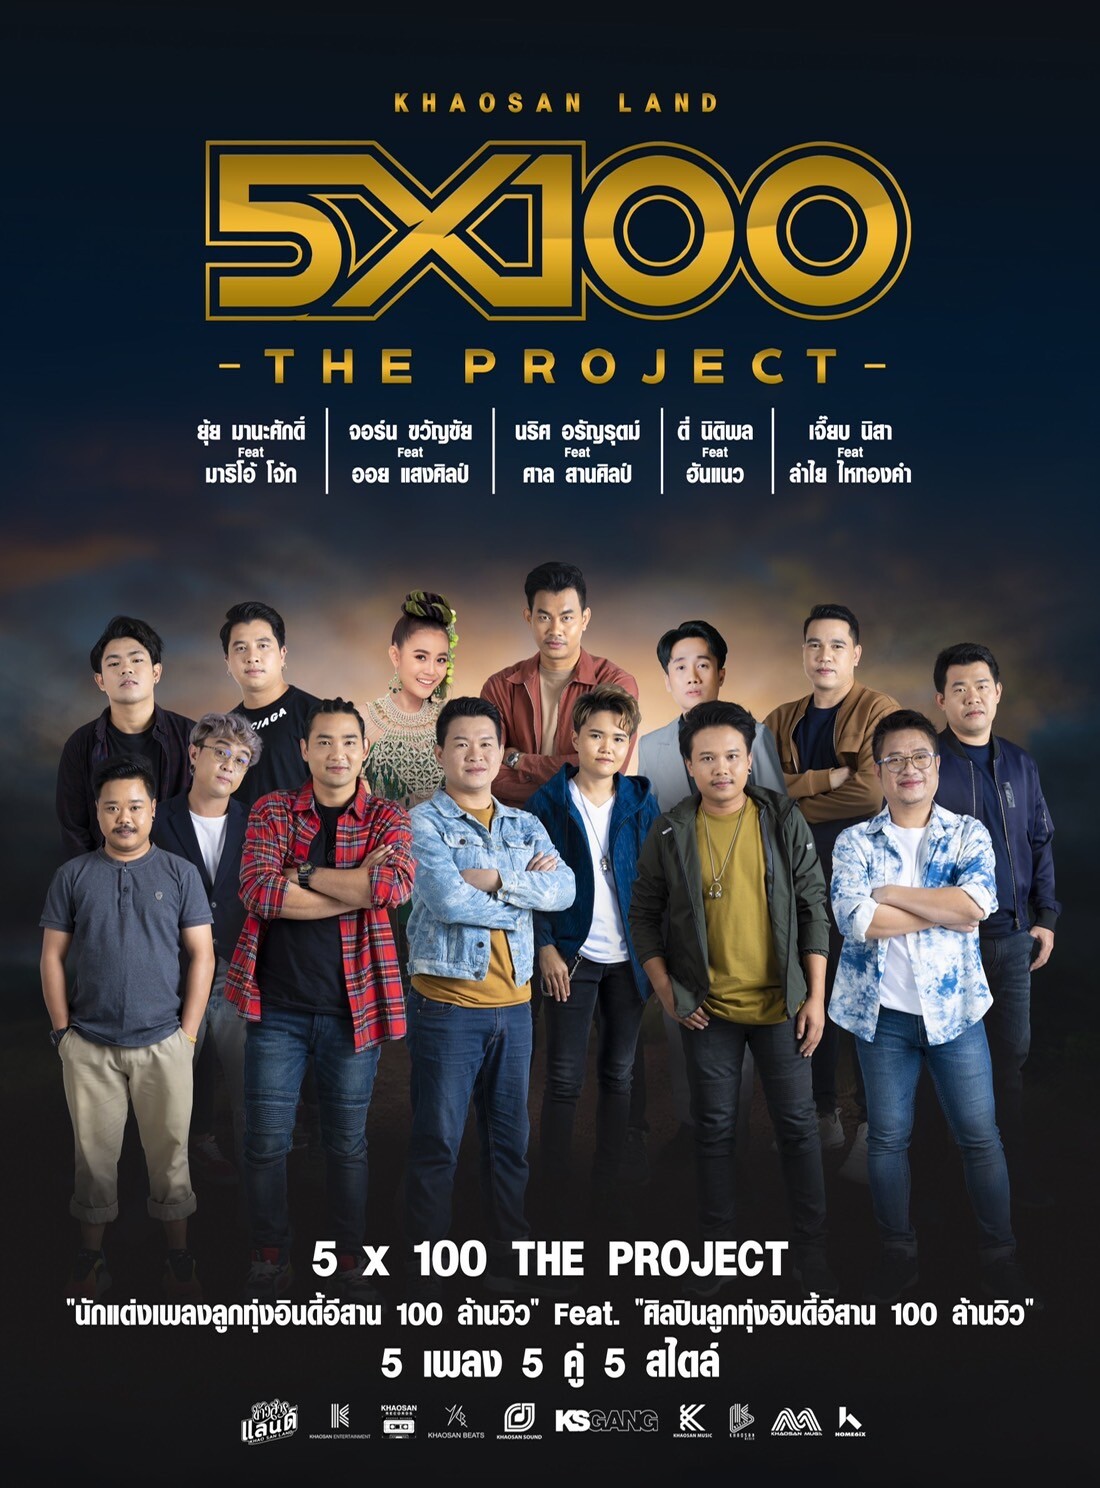 การรวมตัวครั้งยิ่งใหญ่ของวงการเพลงลูกทุ่งอินดี้ "Khaosan Land 5x100 The Project" "นักเขียนร้อยล้าน" ฟีทเจอริ่ง "นักร้องร้อยล้าน"